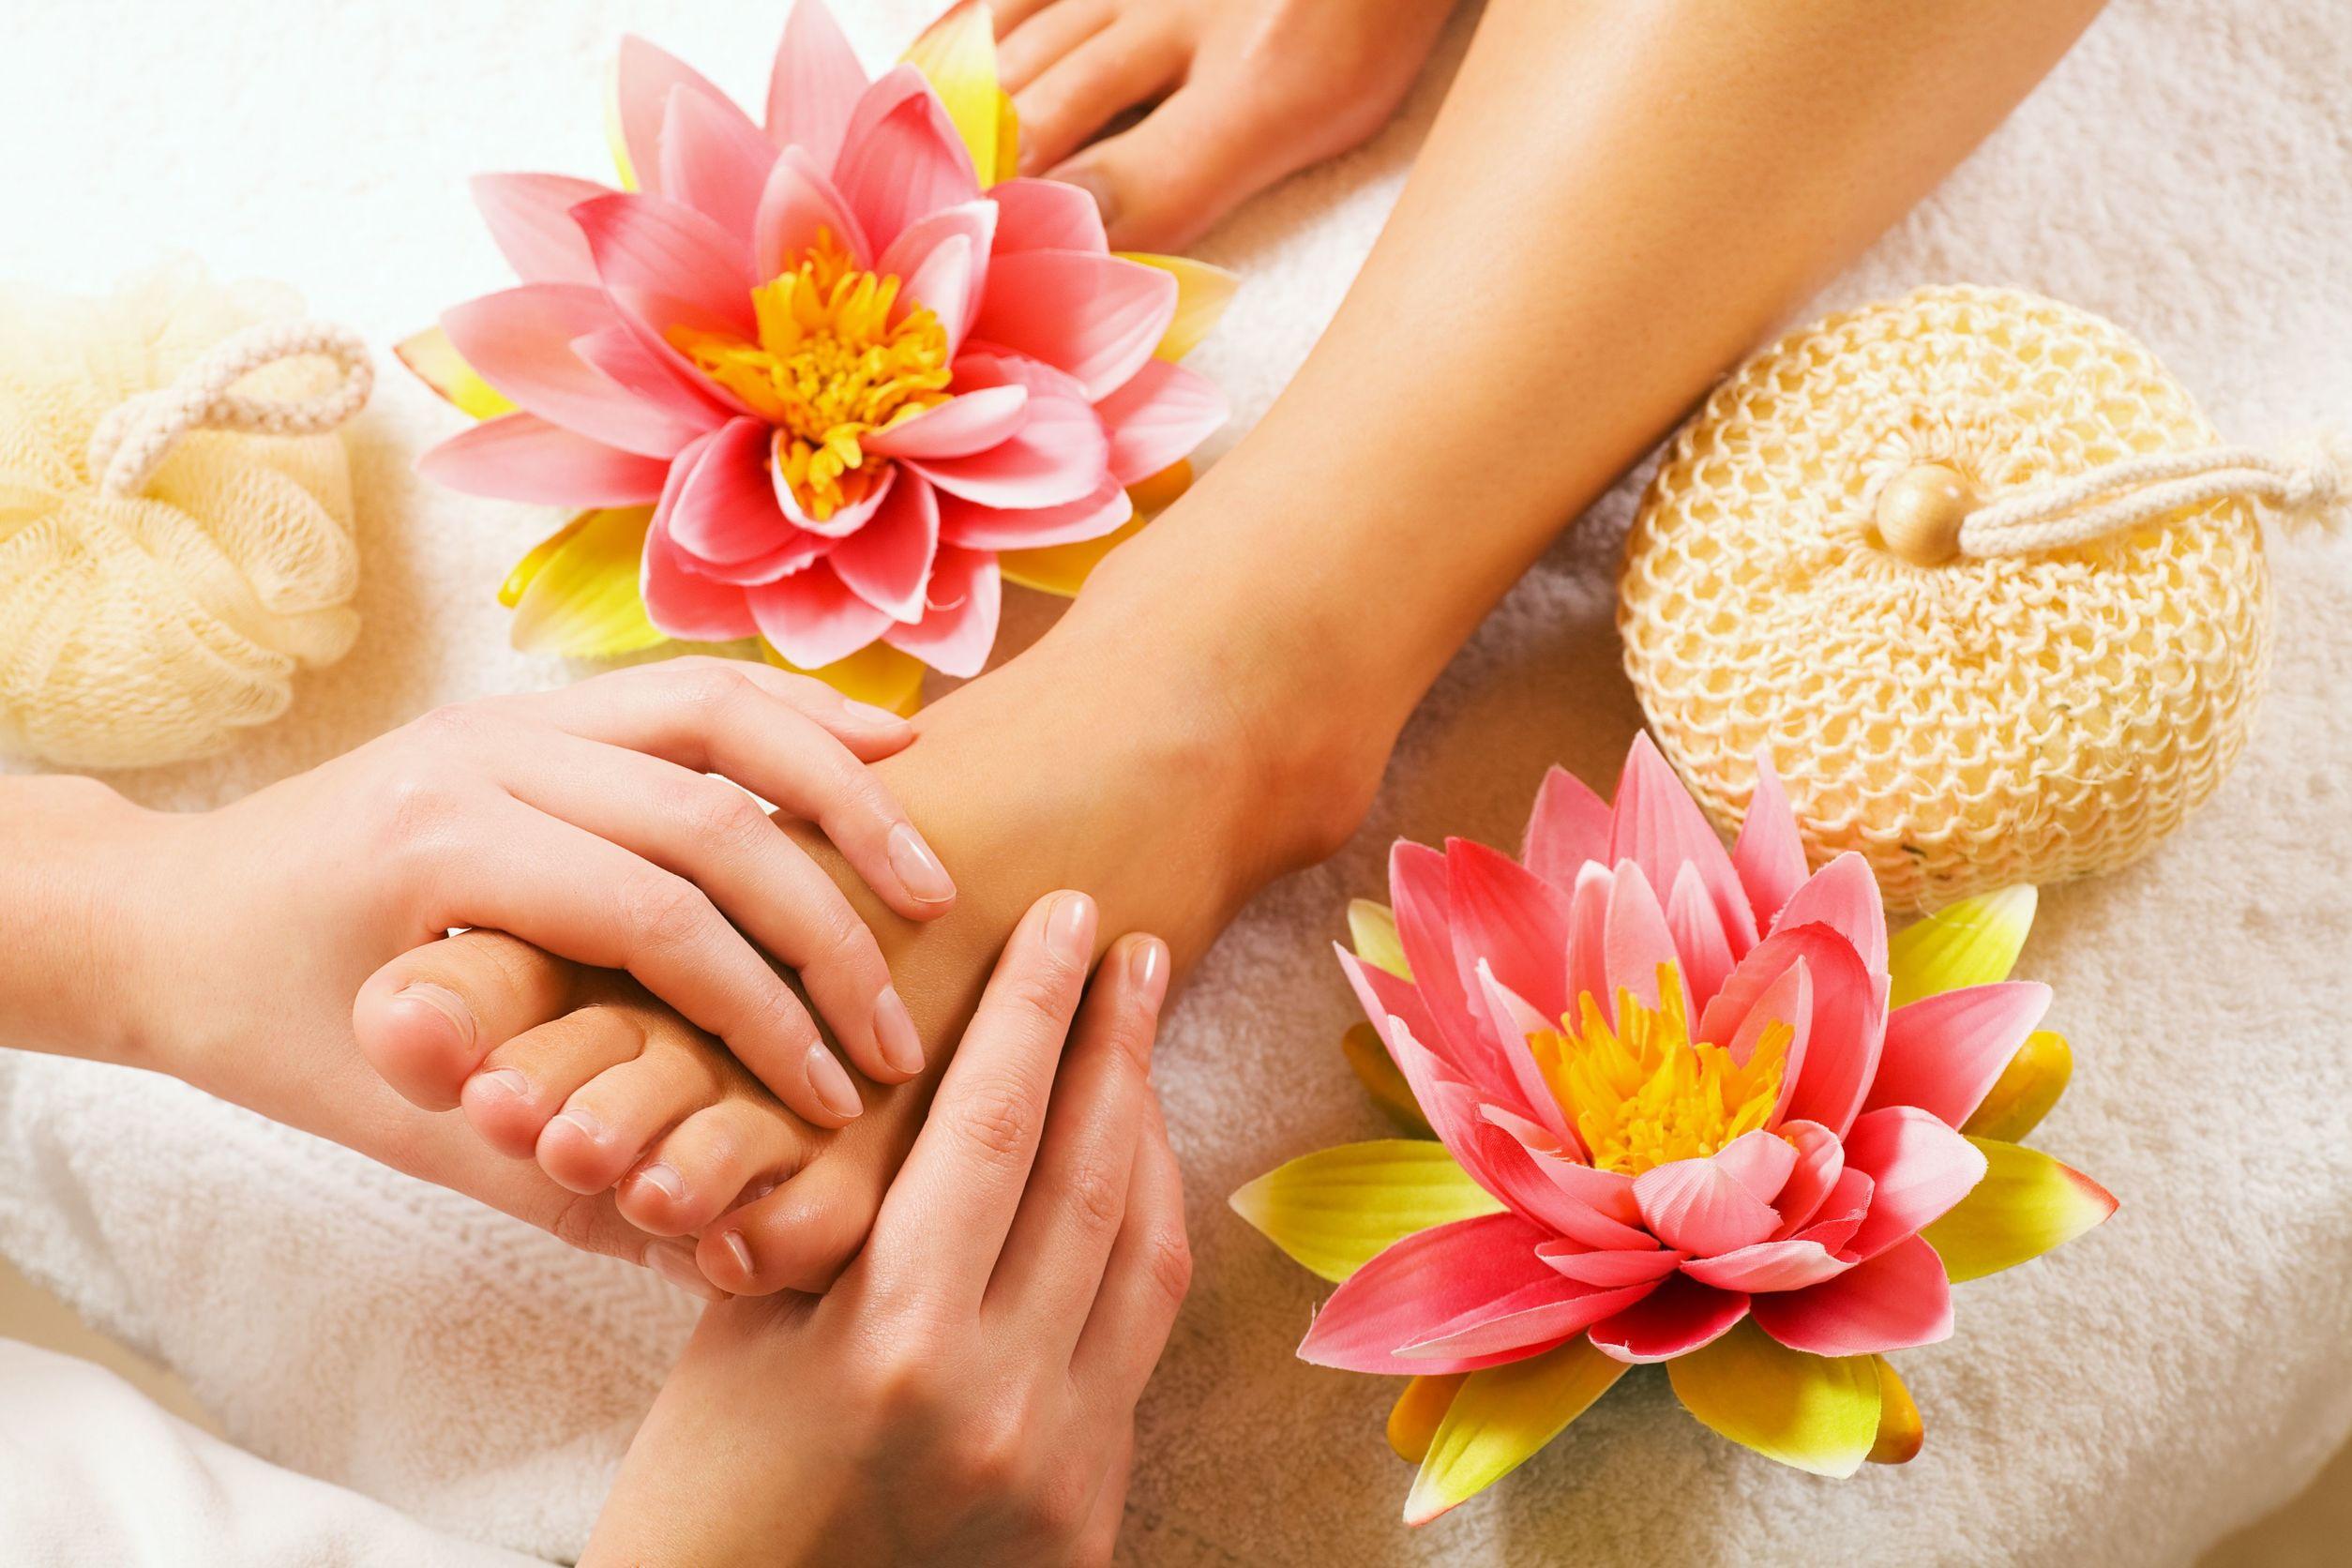 Come farsi un massaggio ai piedi da soli: ecco tutti i consigli